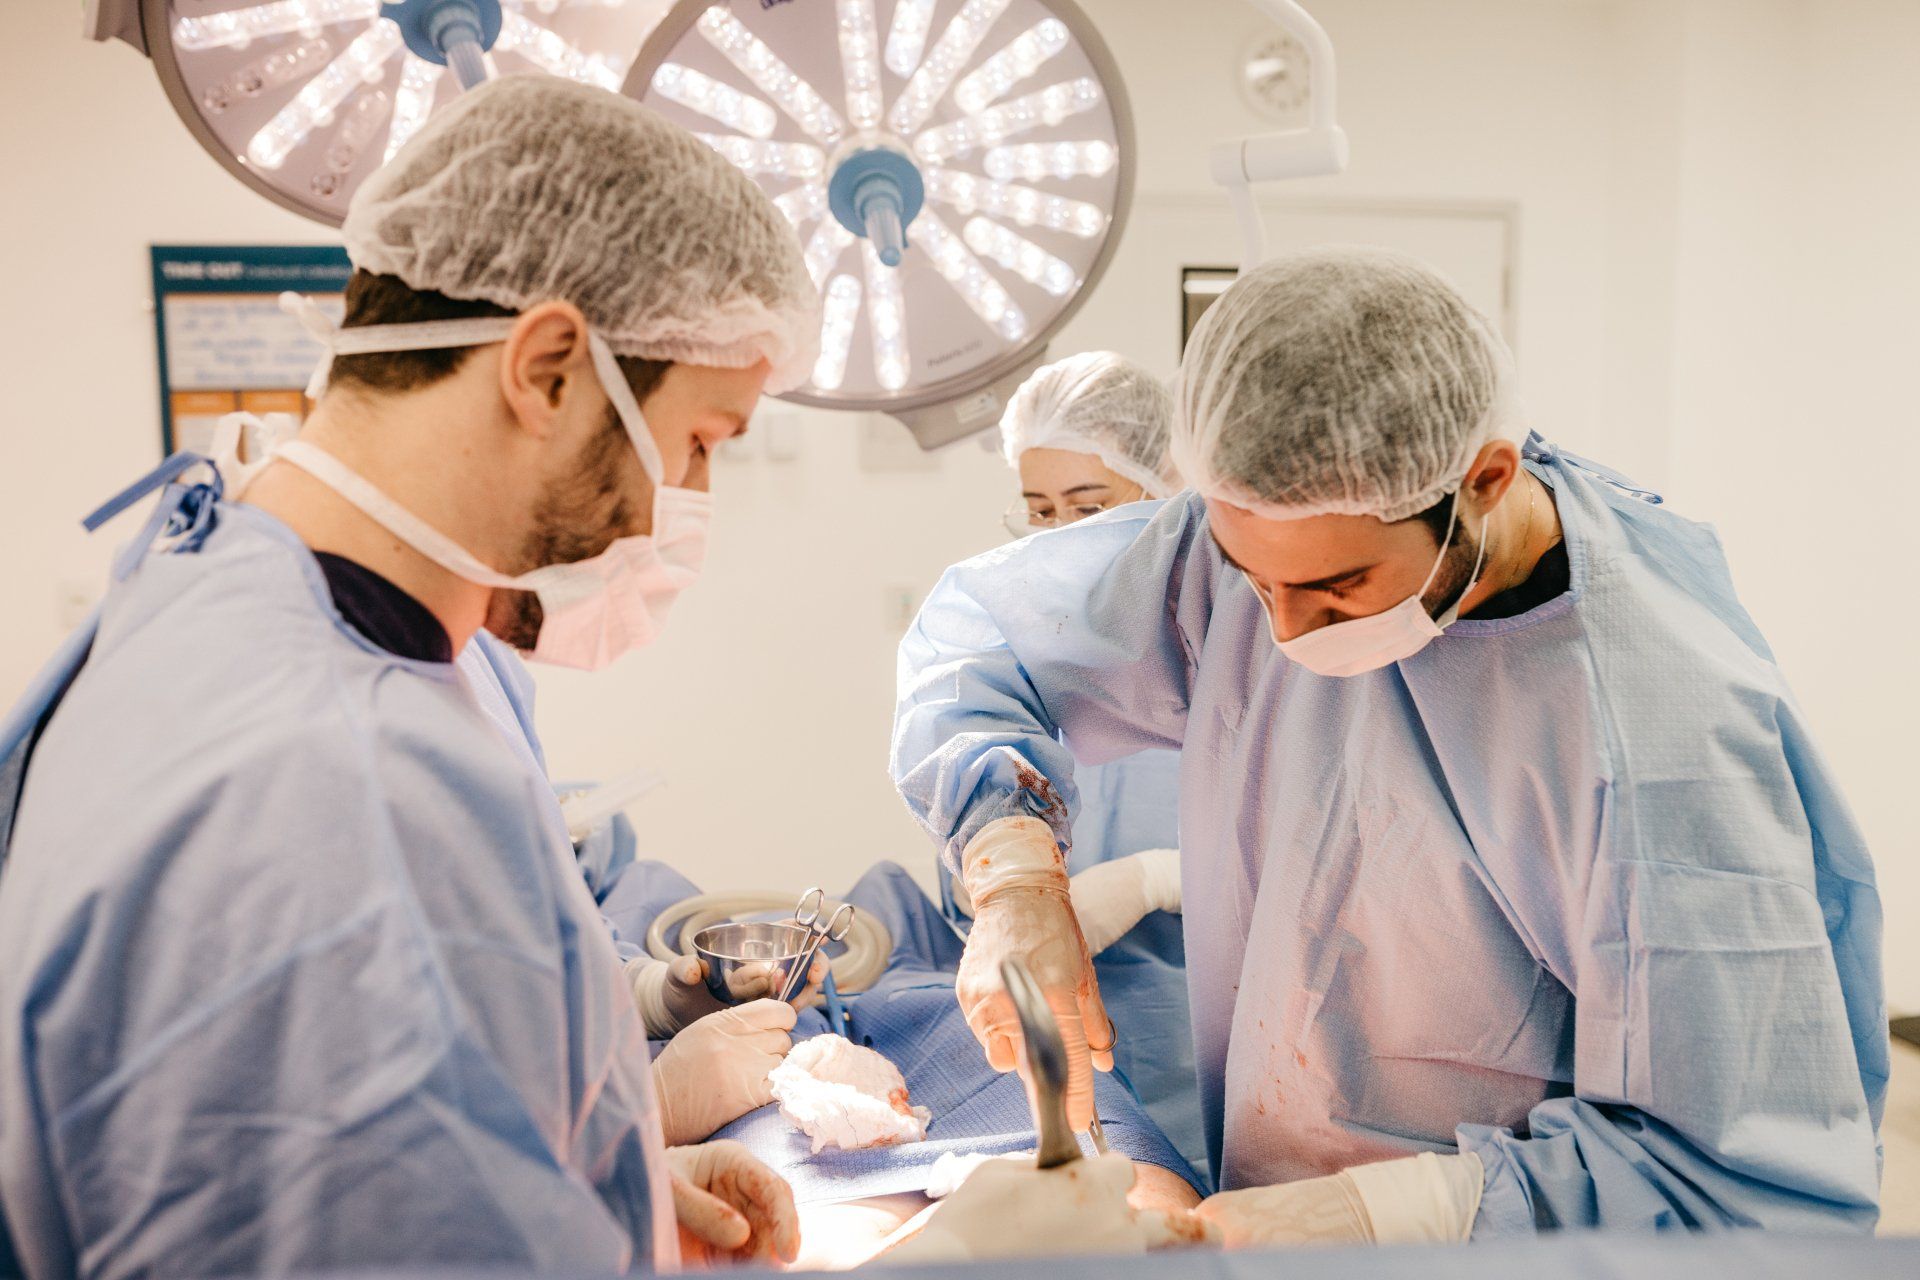 Cirurgiões atuando em procedimento ortopédico